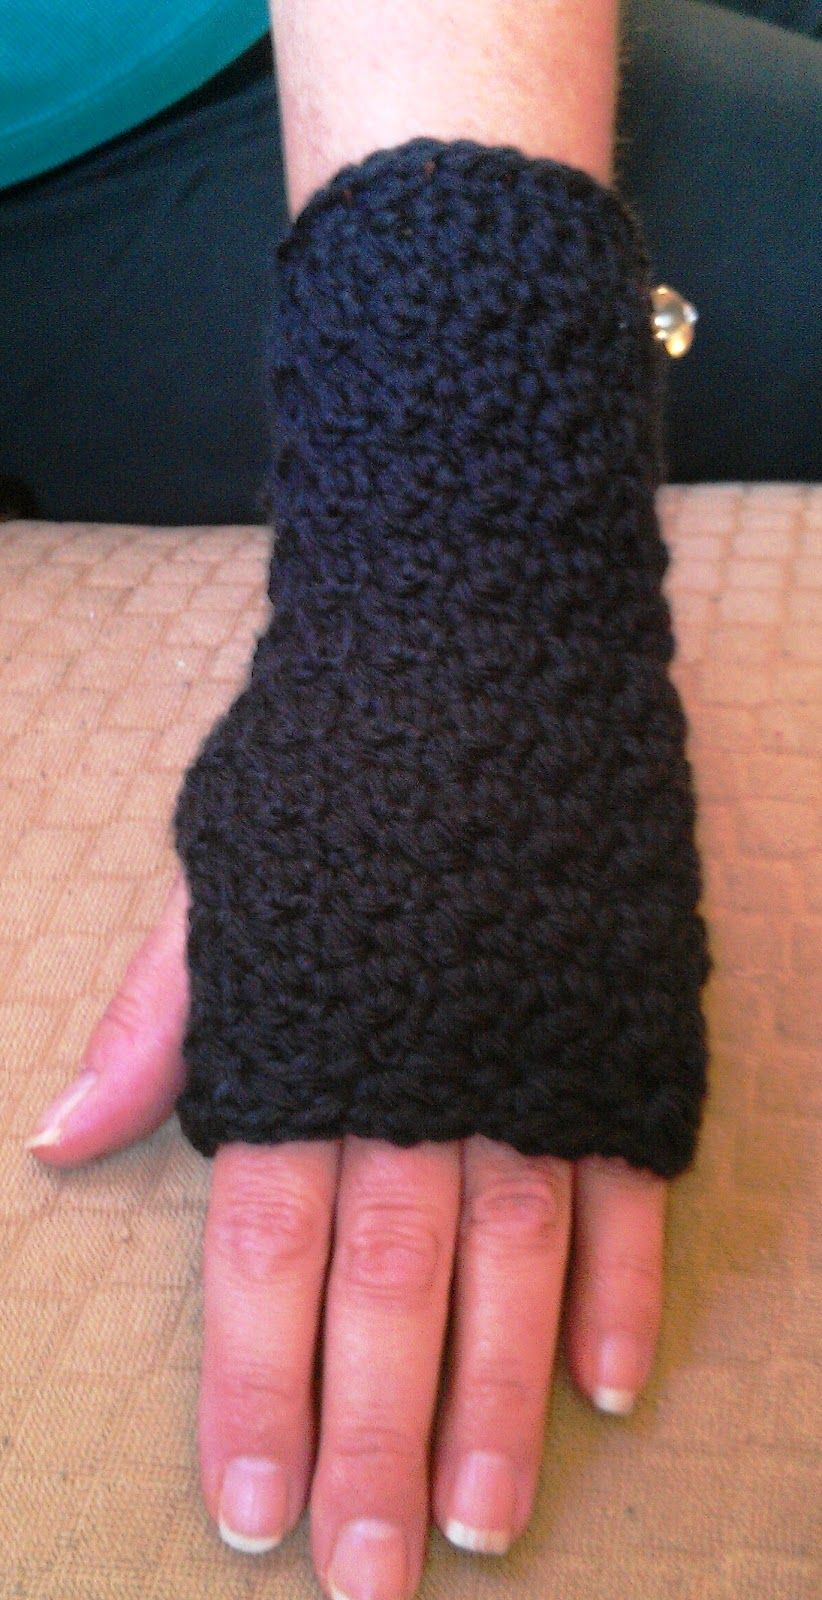 New Crochet Hand/Wrist Warmers Pattern -   Crocheted wrist warmers